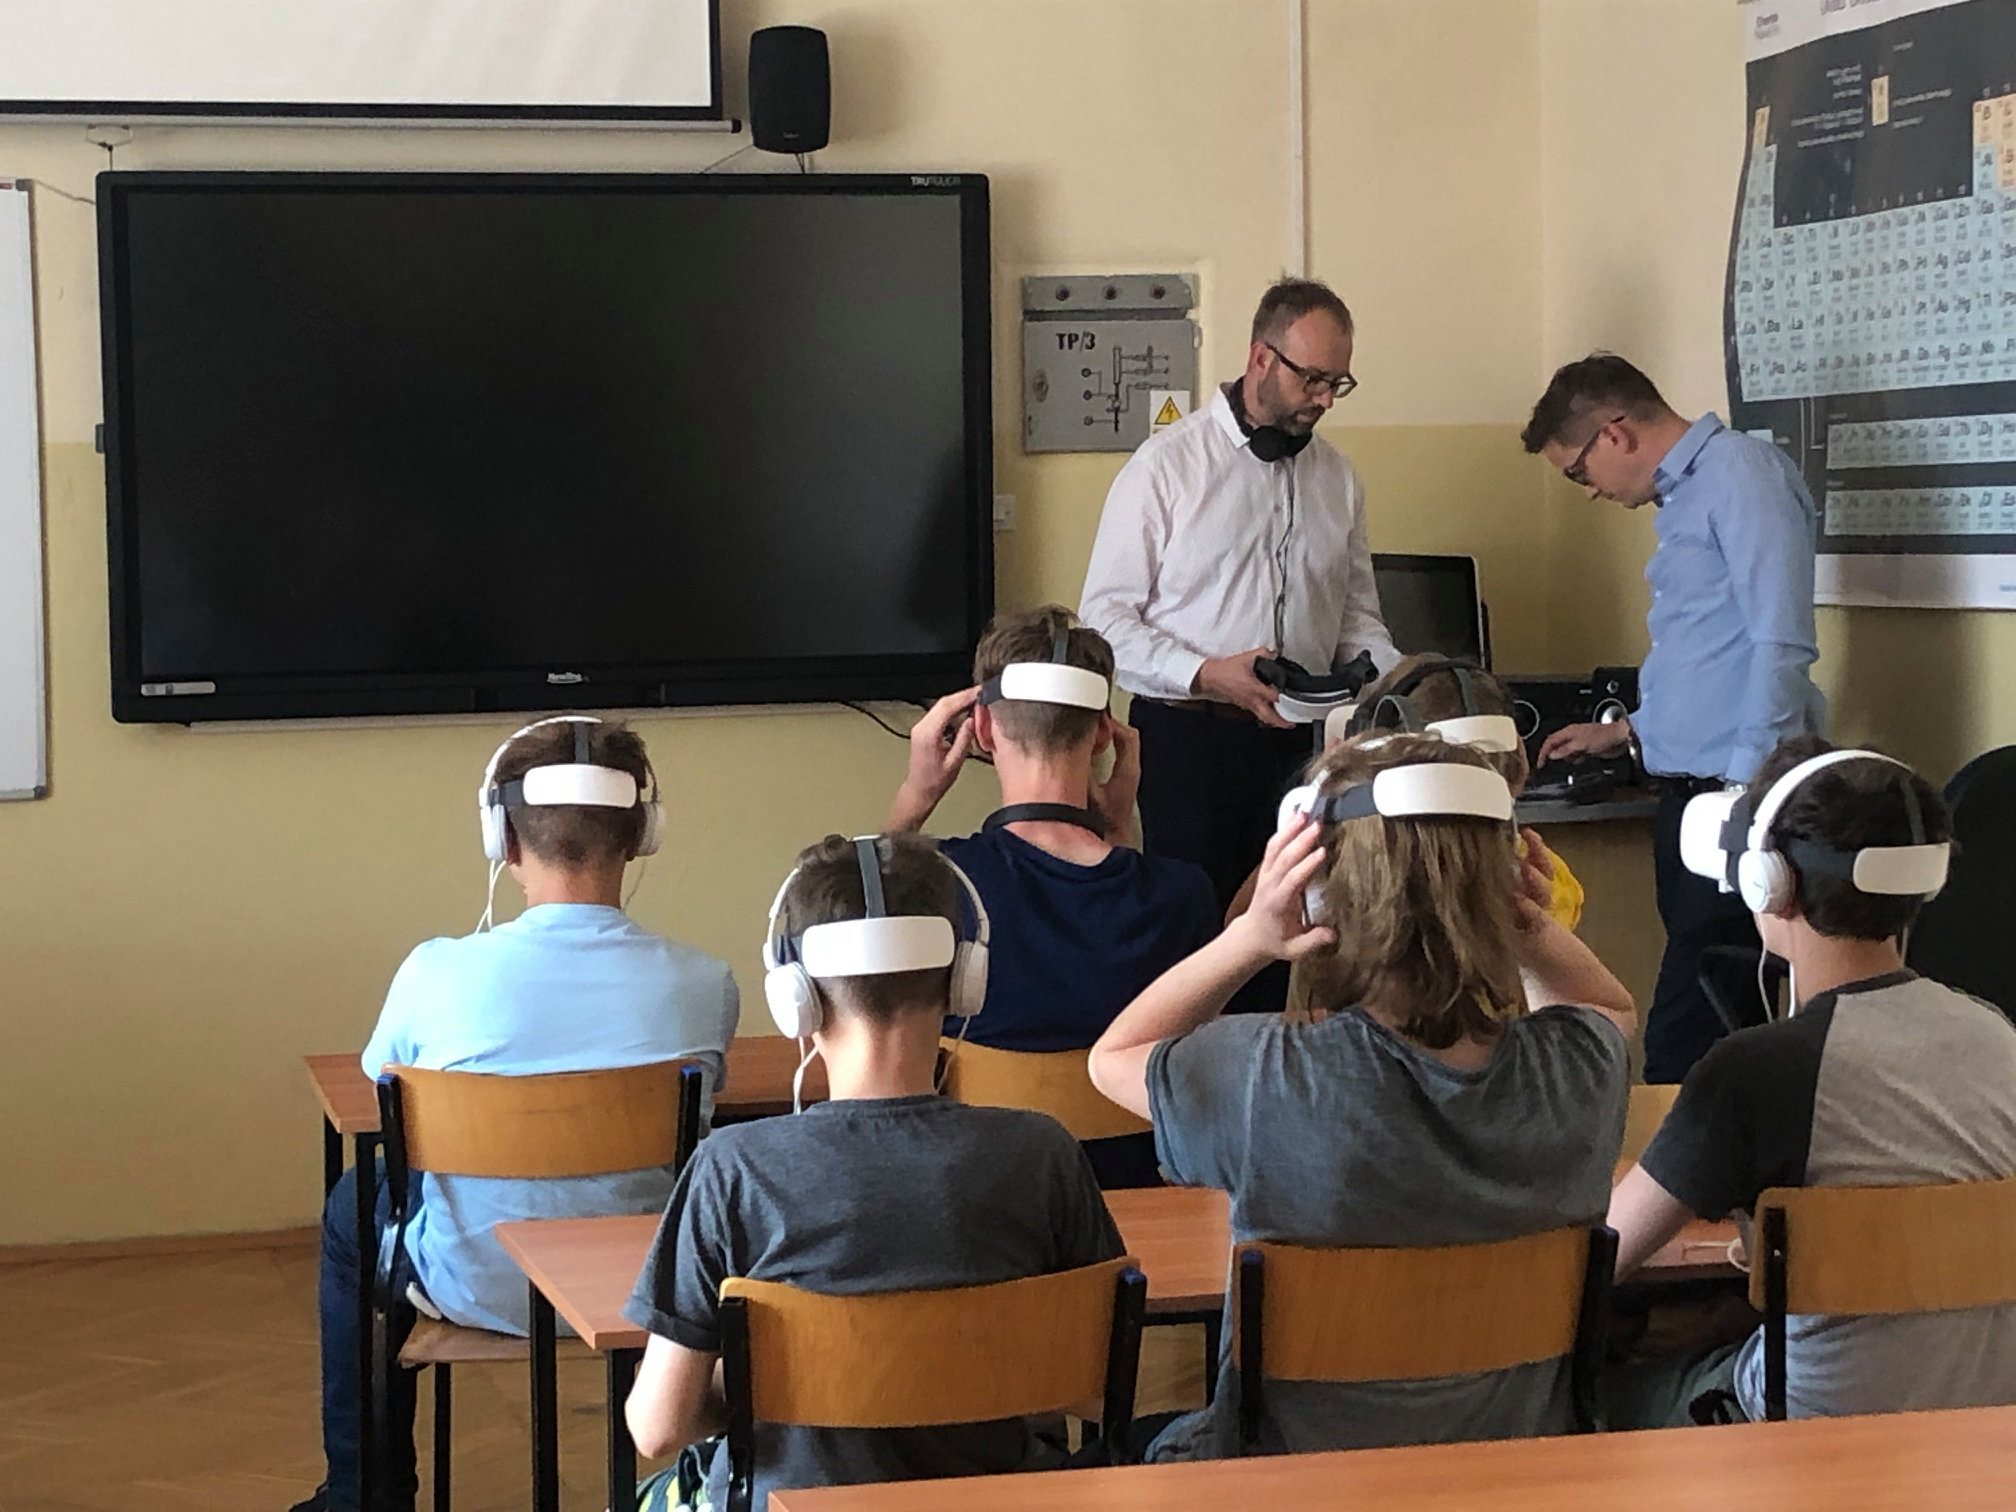 Kilka uczniów siedzi na krzesłach, każda z tych osób ma założone okulary VR - z wirtualną rzeczywistością.